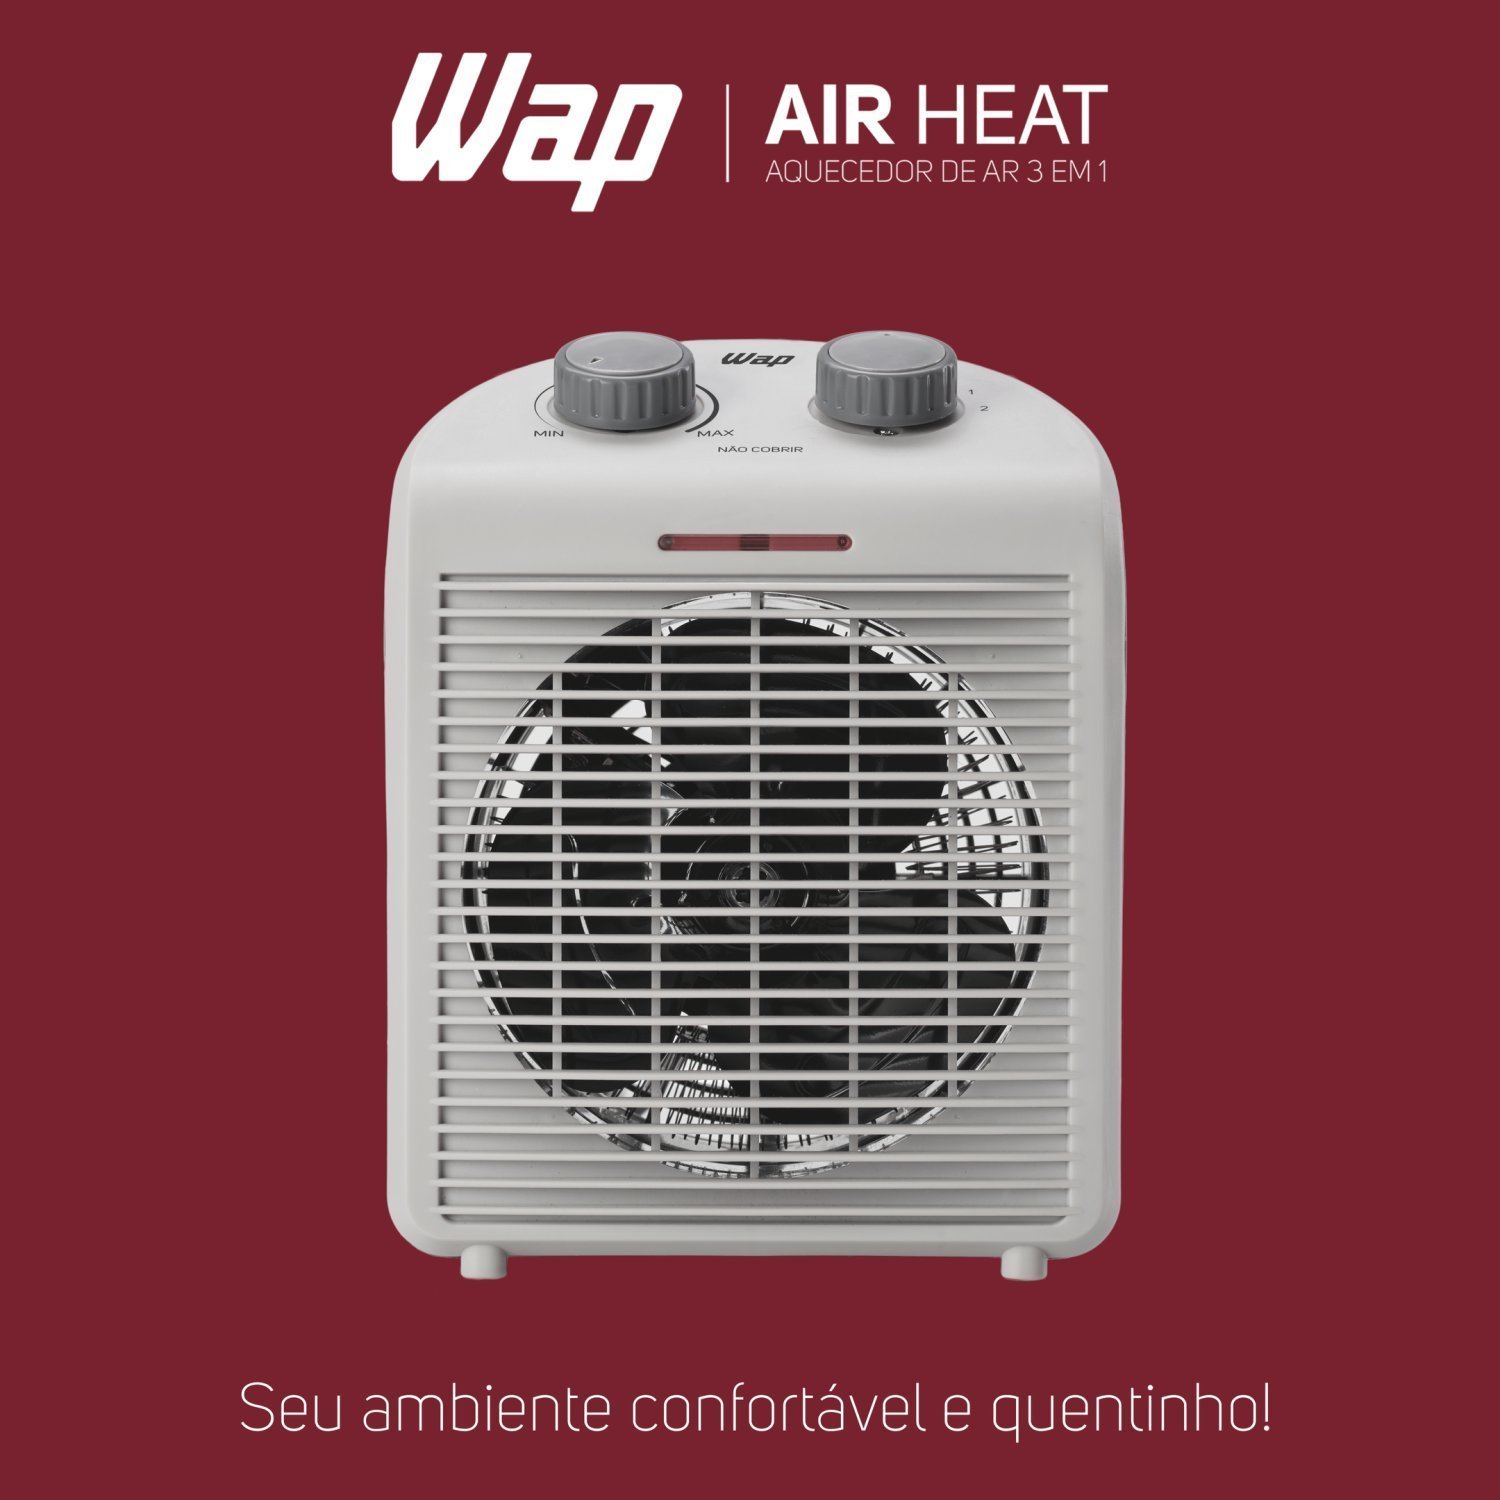 Aquecedor de Ar Portátil Air Heat 3 em 1 1500w 127v WAP Branco - 11